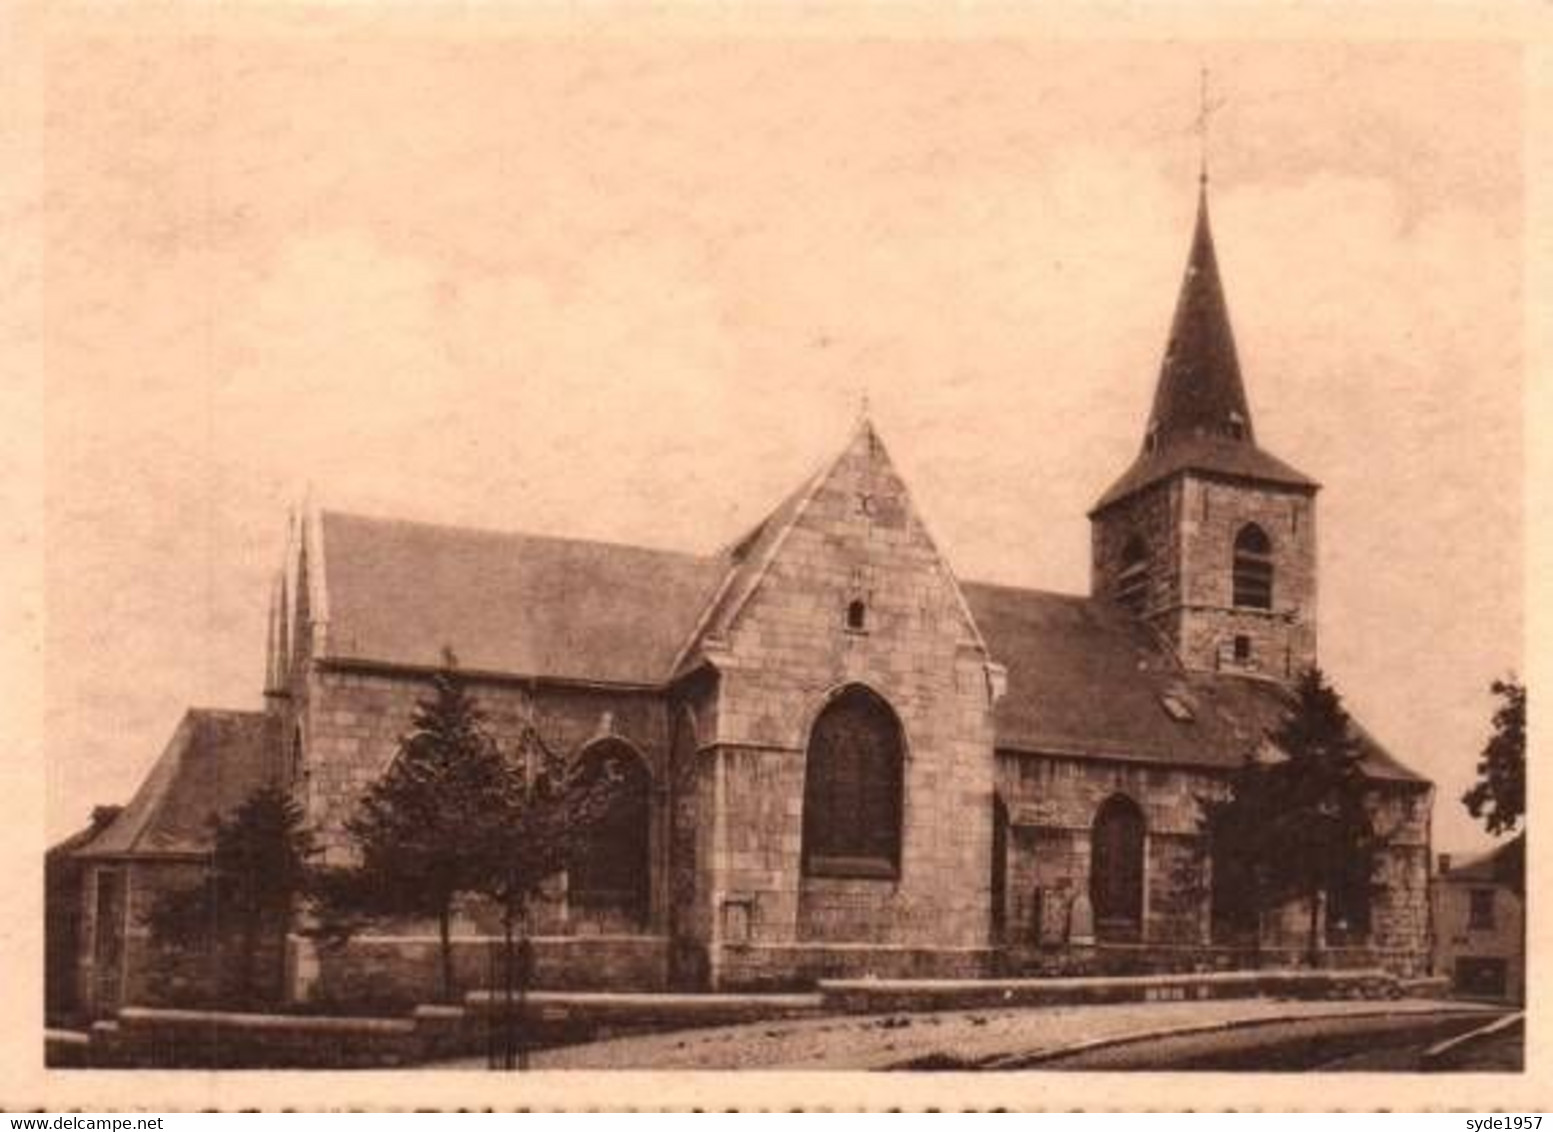 Montigny-le-Tilleul  8 cartes de l'Eglise Saint-Martin, éditée dans les années 1930.....